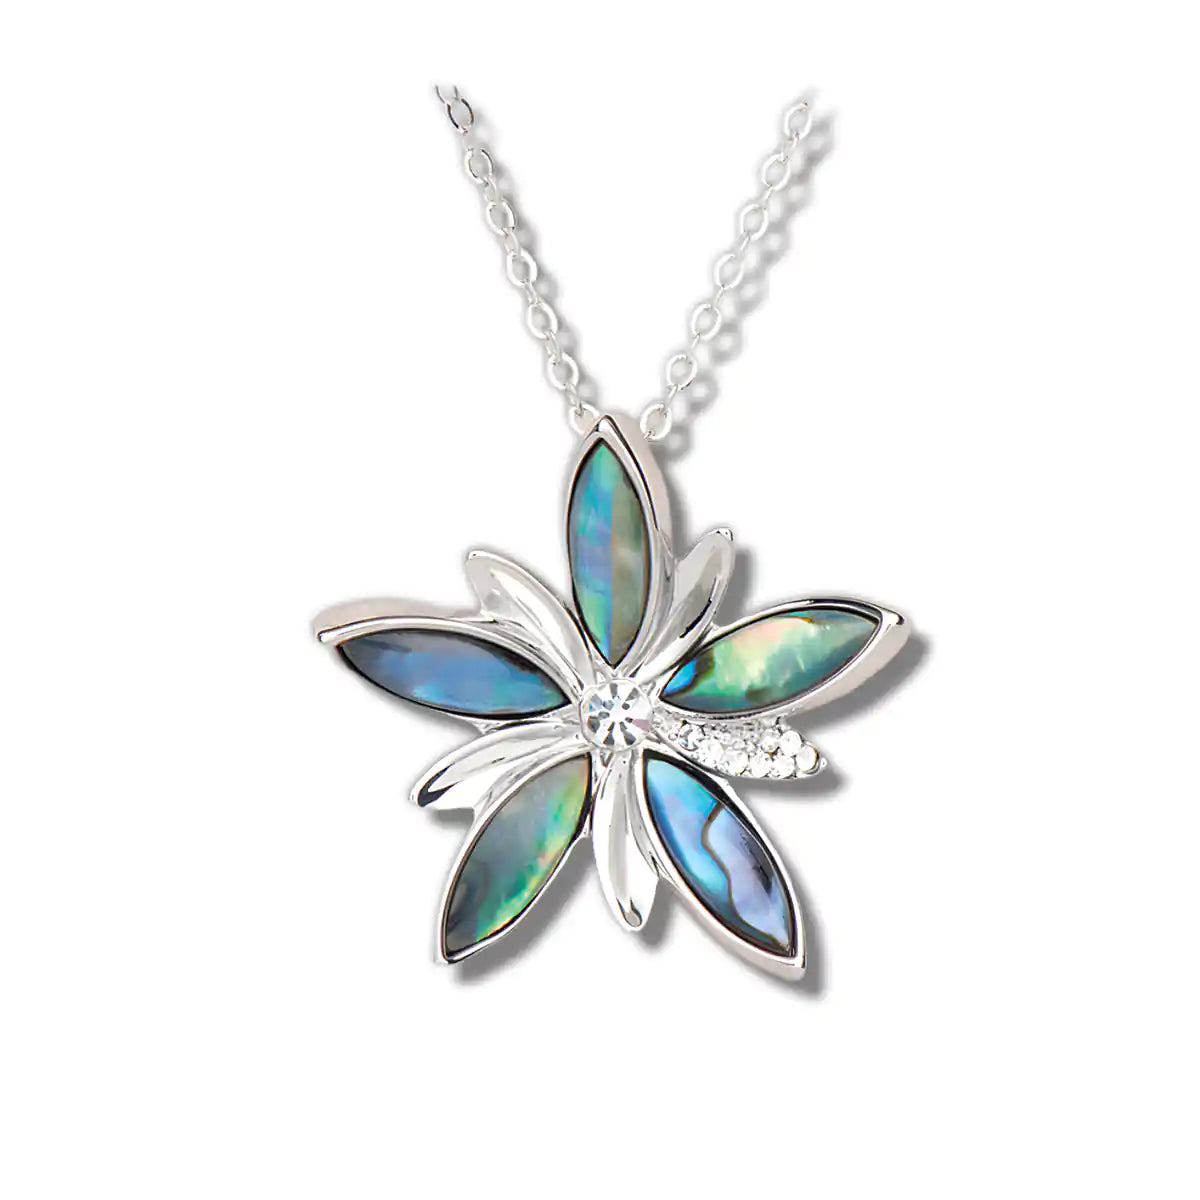 Glacier pearle bloom necklace